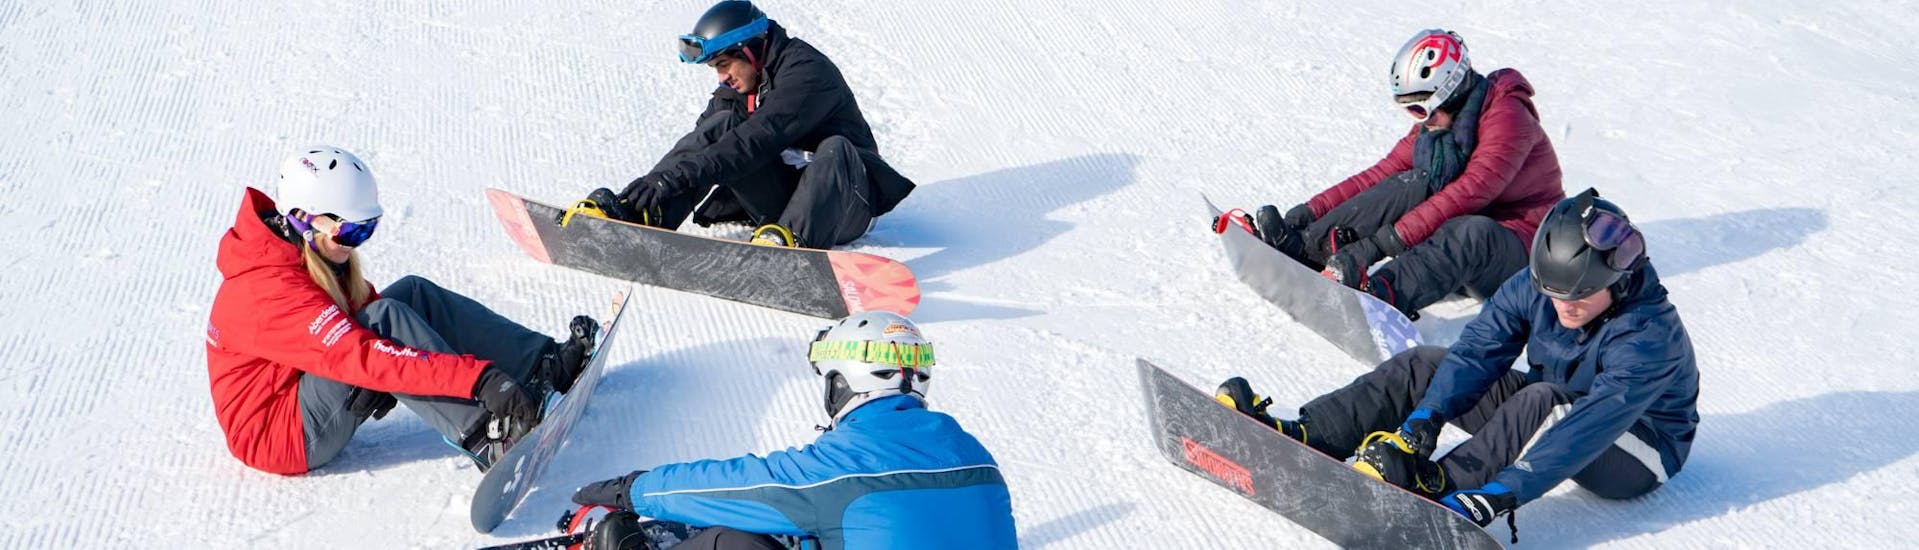 Clases de snowboard a partir de 12 años para debutantes.